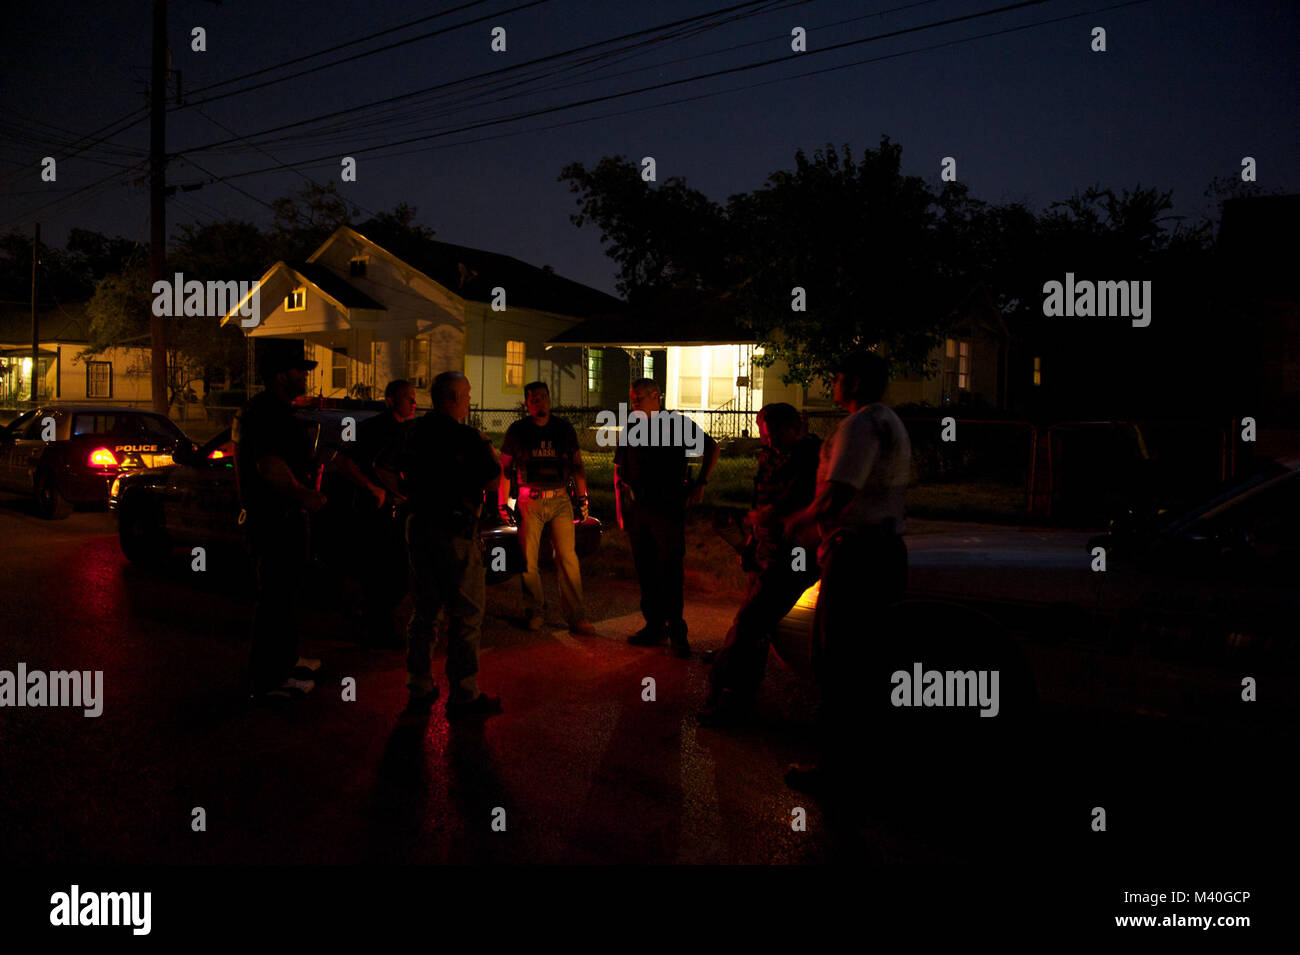 SAN ANTONIO - l'U.S. Marshals Service et le Département de Police de San Antonio vous annonce l'achèvement de l'opération. Beam-Target Orejon Triple L'objectif des 17 semaines de lutte contre les bandes violentes et la réduction de la criminalité dans la zone métropolitaine de San Antonio a été de lutter contre la criminalité associée aux activités des gangs en réunissant le plus de délinquants violents à la justice et à saisir les outils de leur métier, de drogues et d'armes. Les chefs de gangs et criminels notoires de la région ont été identifiés et ciblés et appréhendé grâce aux efforts combinés des gouvernements fédéral, étatiques et locaux d'application de la loi. Les résultats de l'opération Bea Triple Banque D'Images